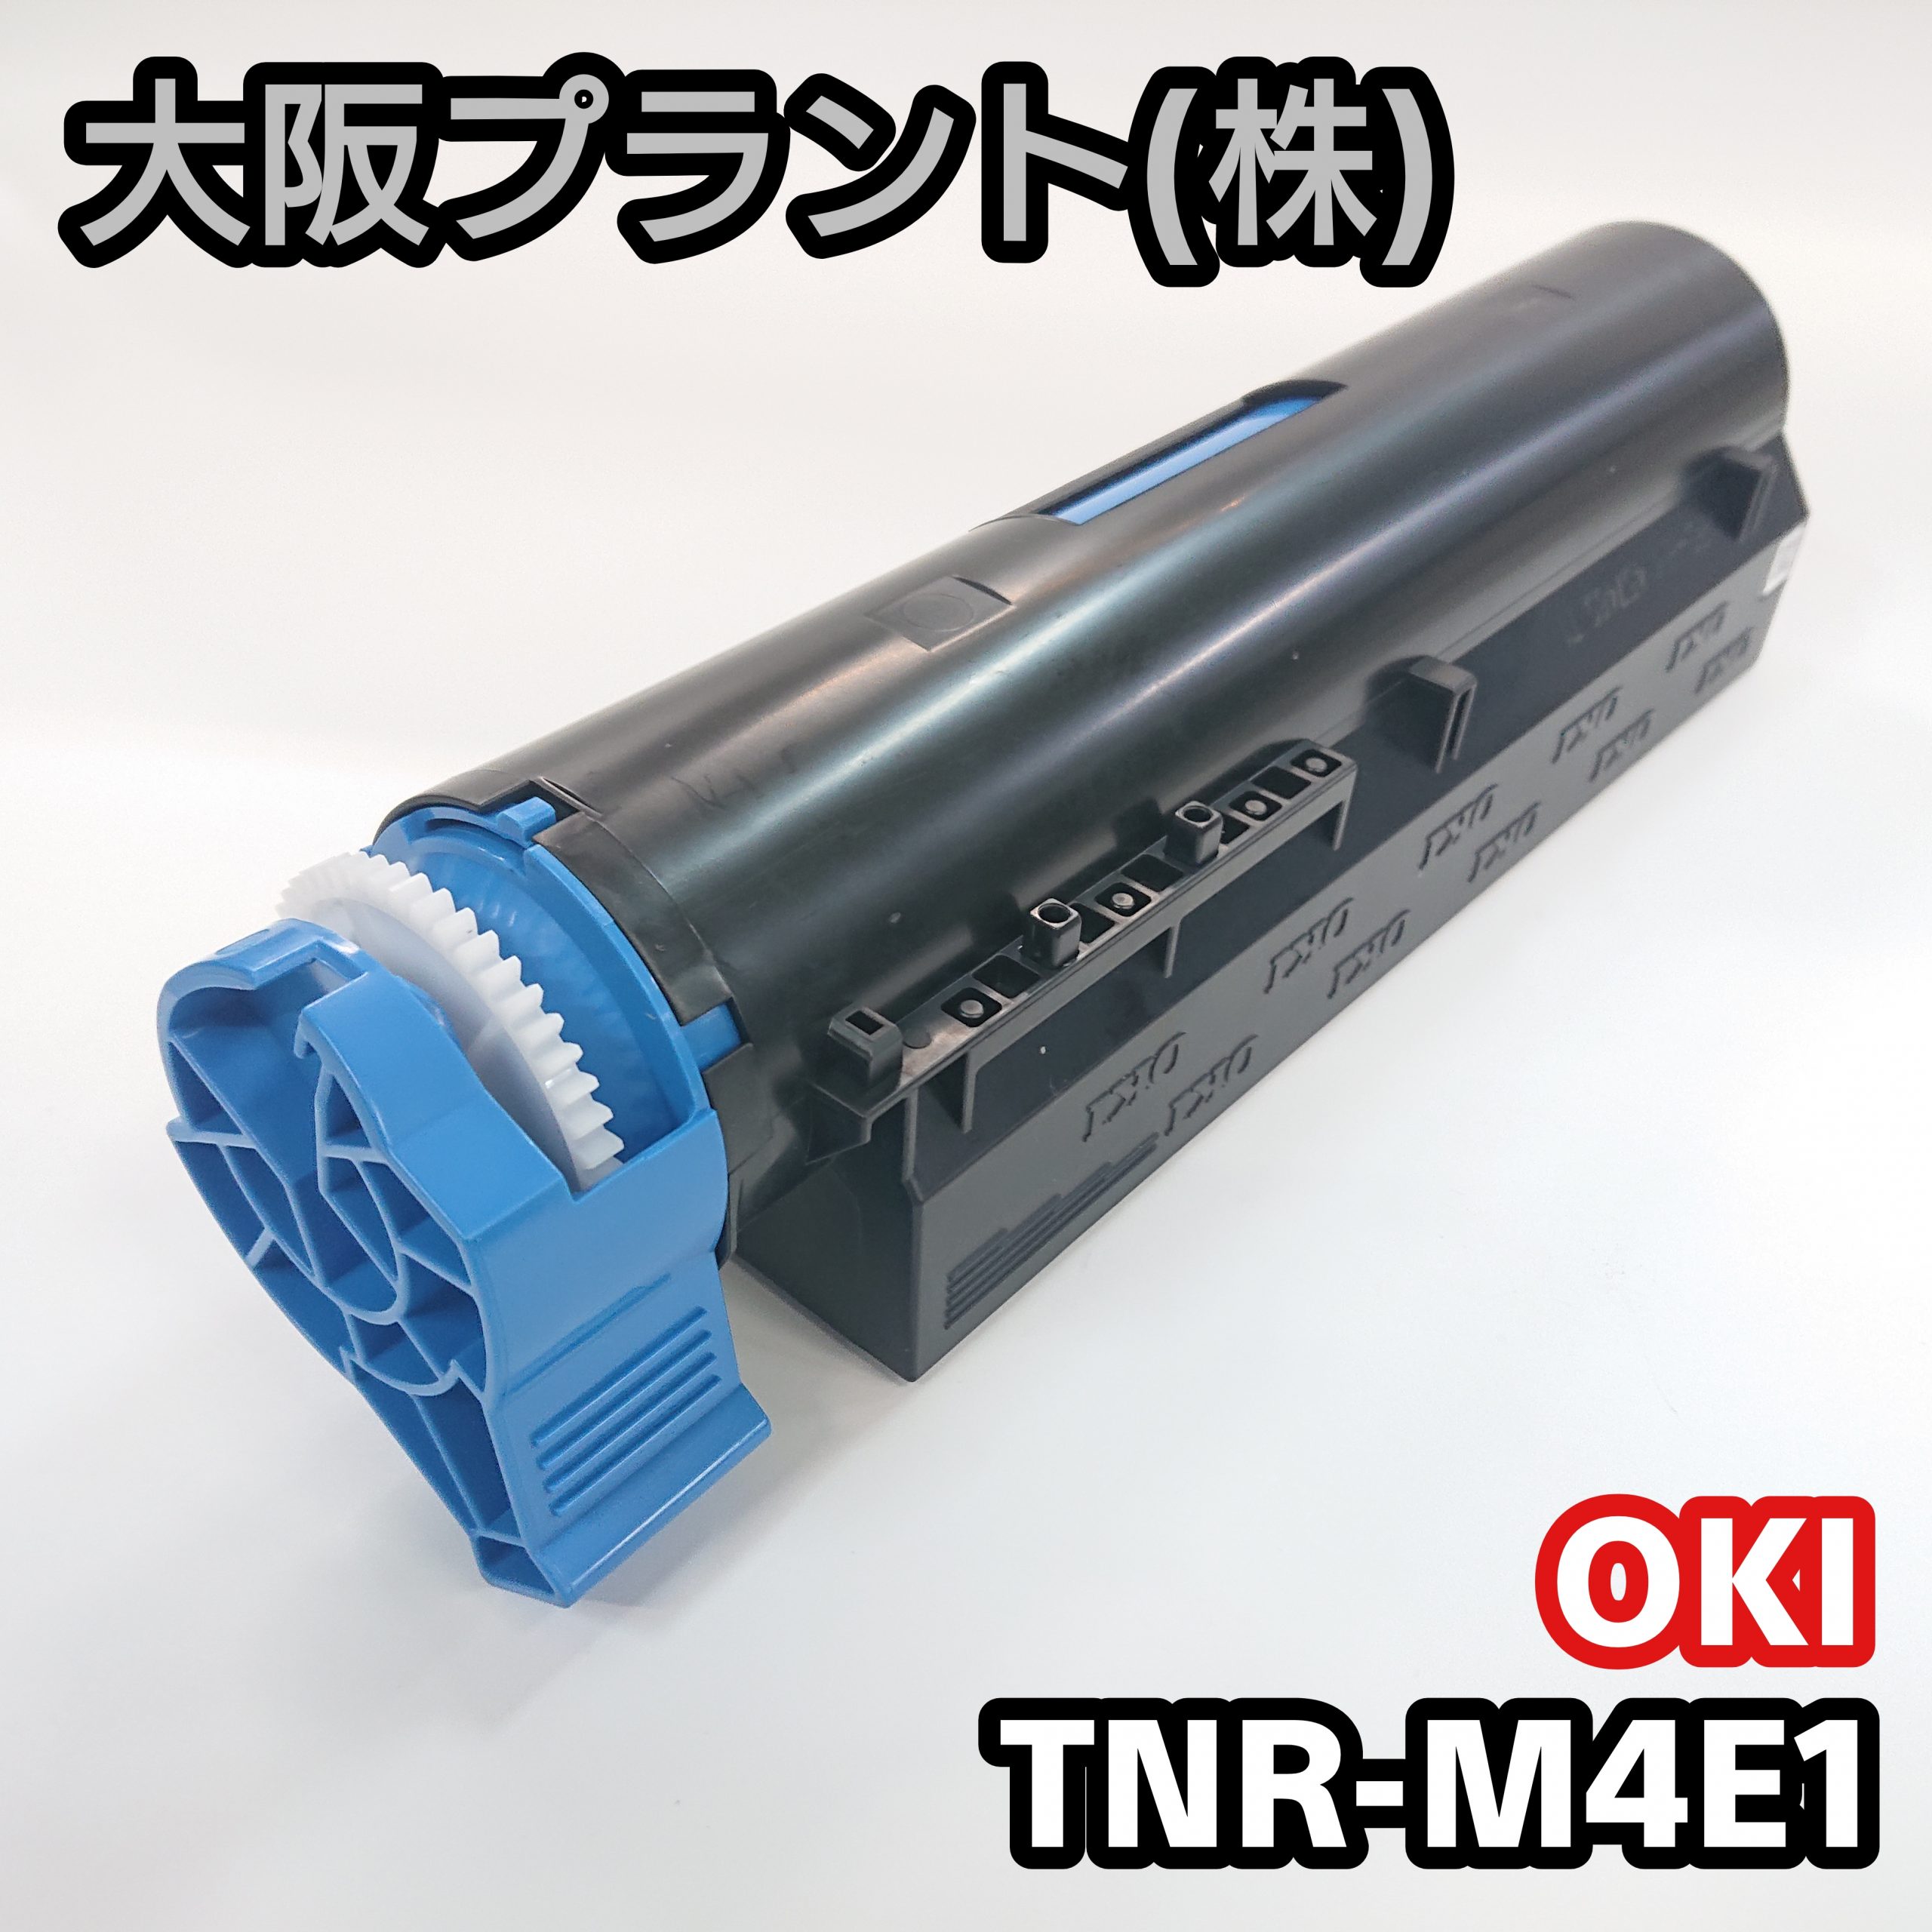 OKI TNR-M4E1